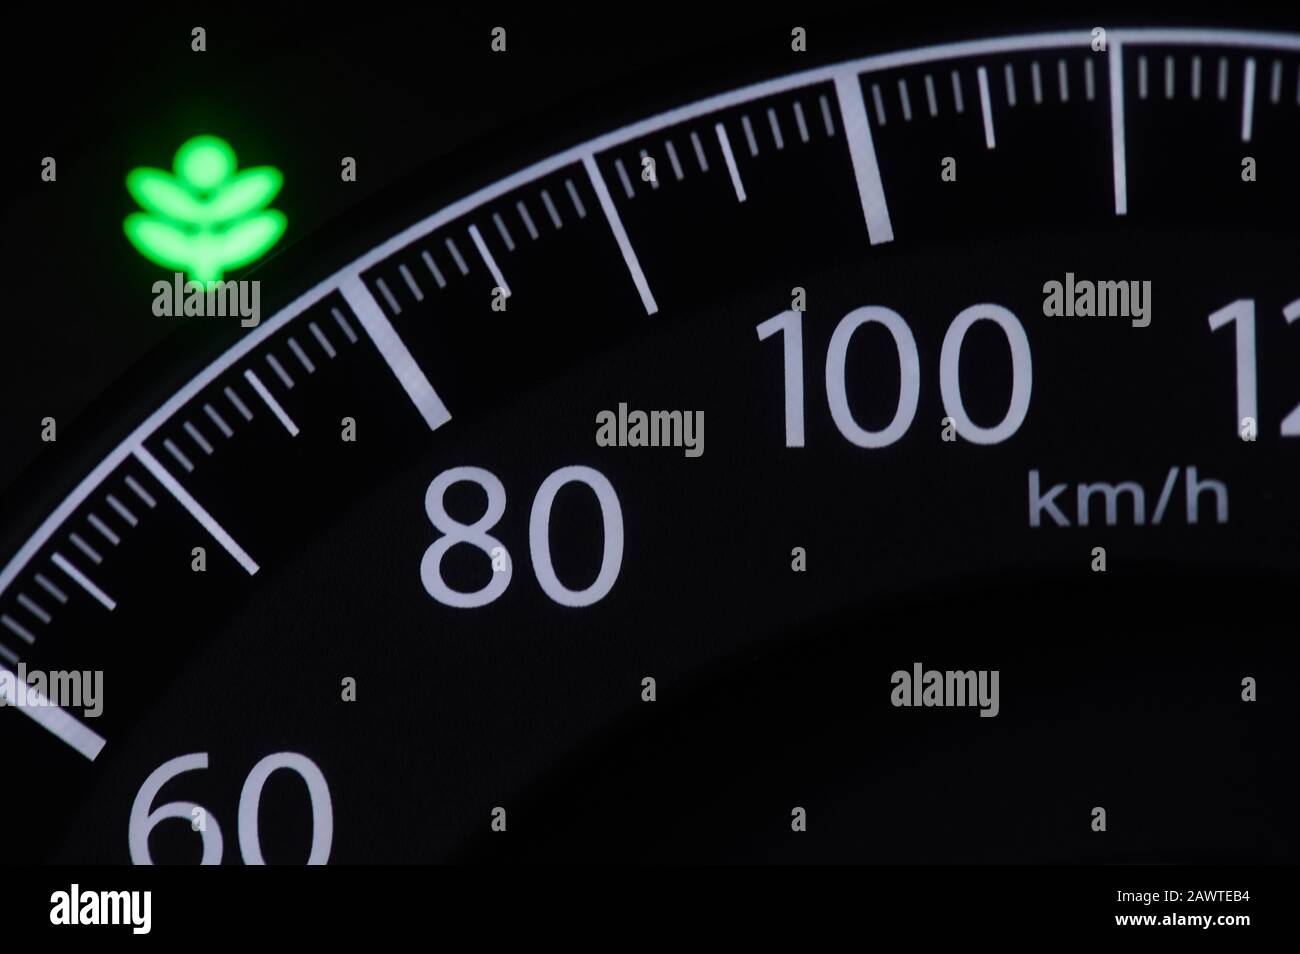 Vue rapprochée de l'indicateur de vitesse du véhicule sur le tableau de bord Banque D'Images